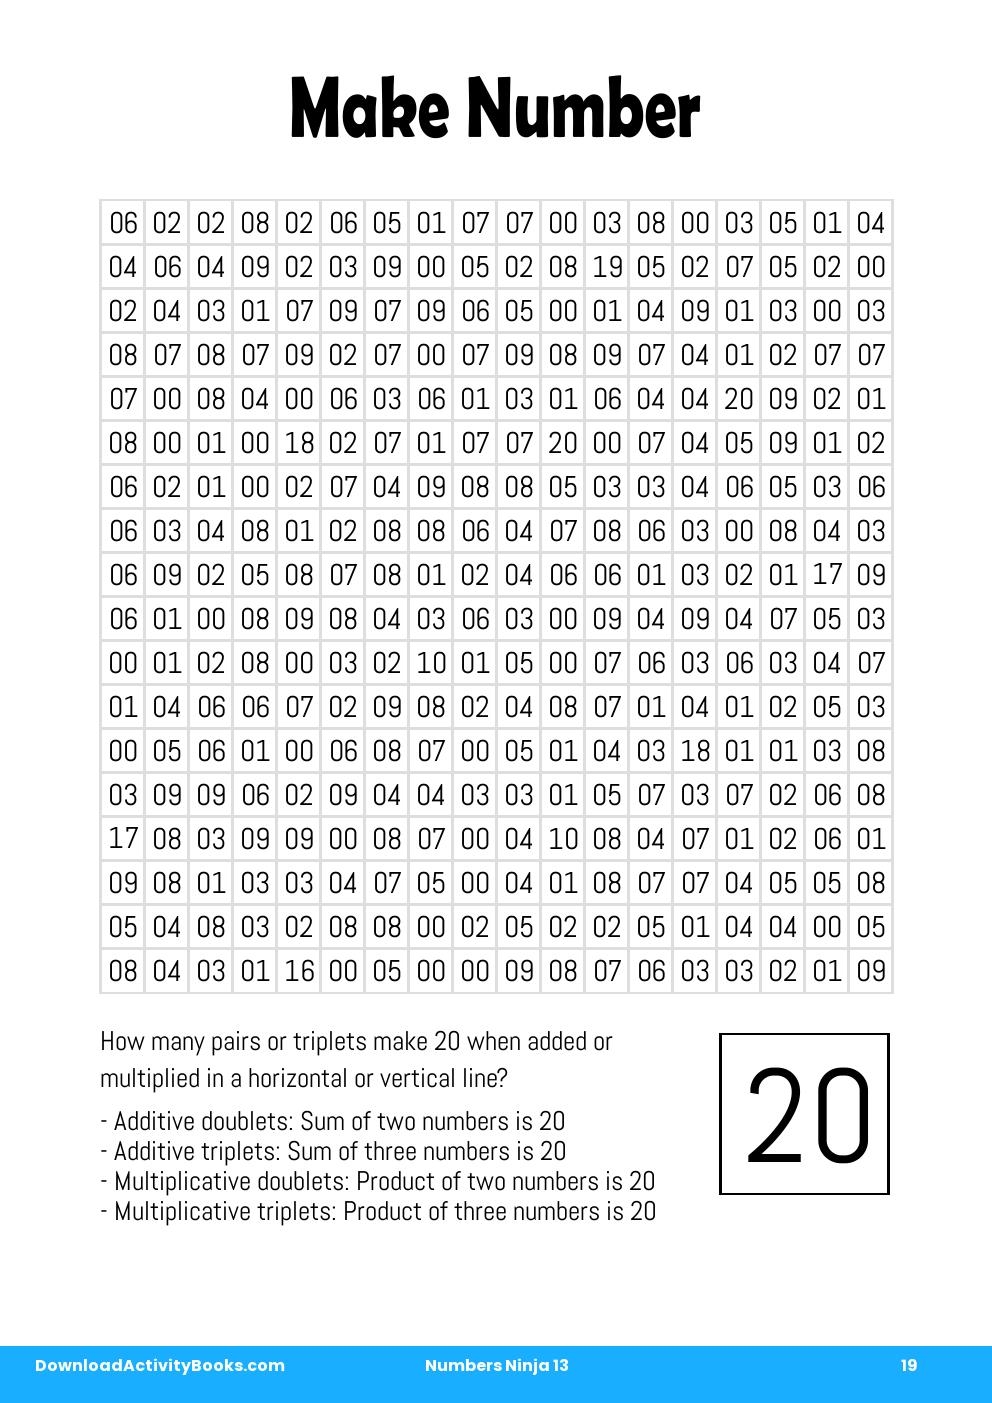 Make Number in Numbers Ninja 13